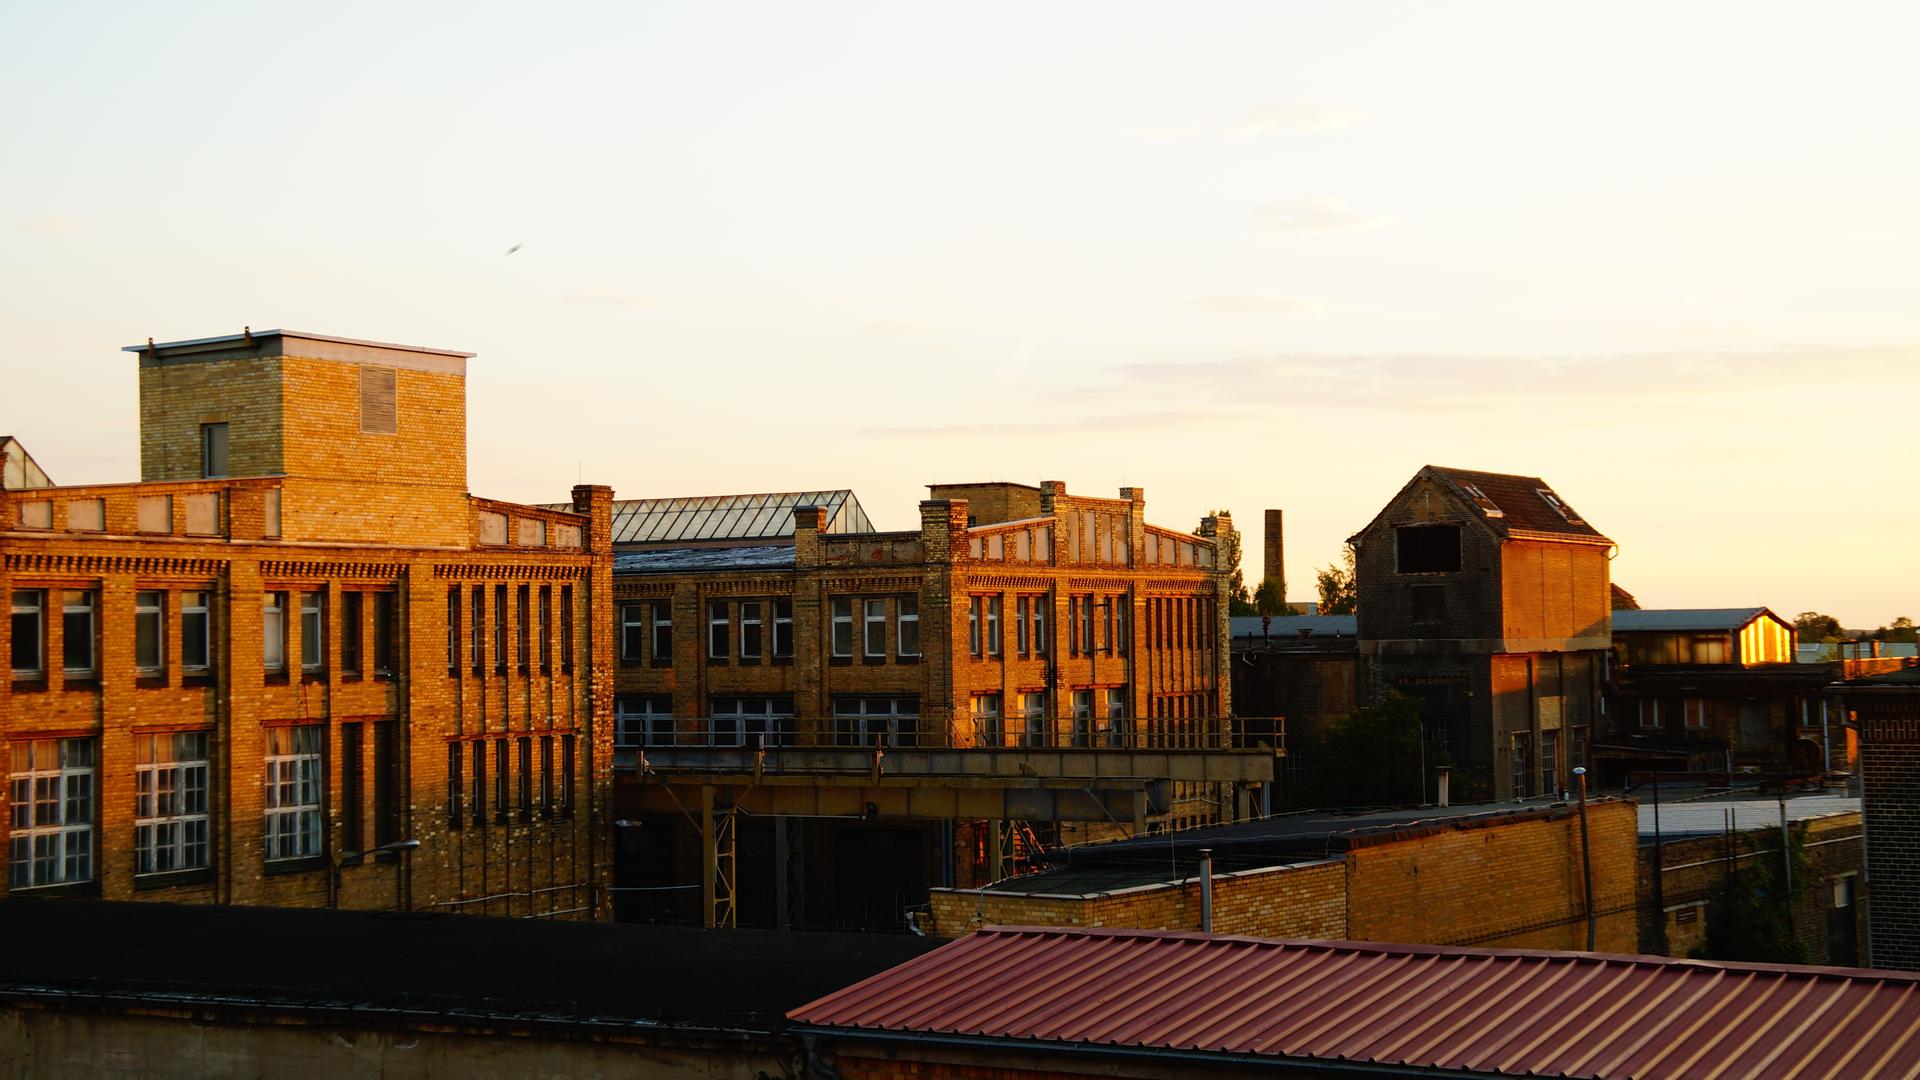 Ein großes, altes Fabrikgebäude  aus dunkelrotem Ziegelstein in der Abendsonne.